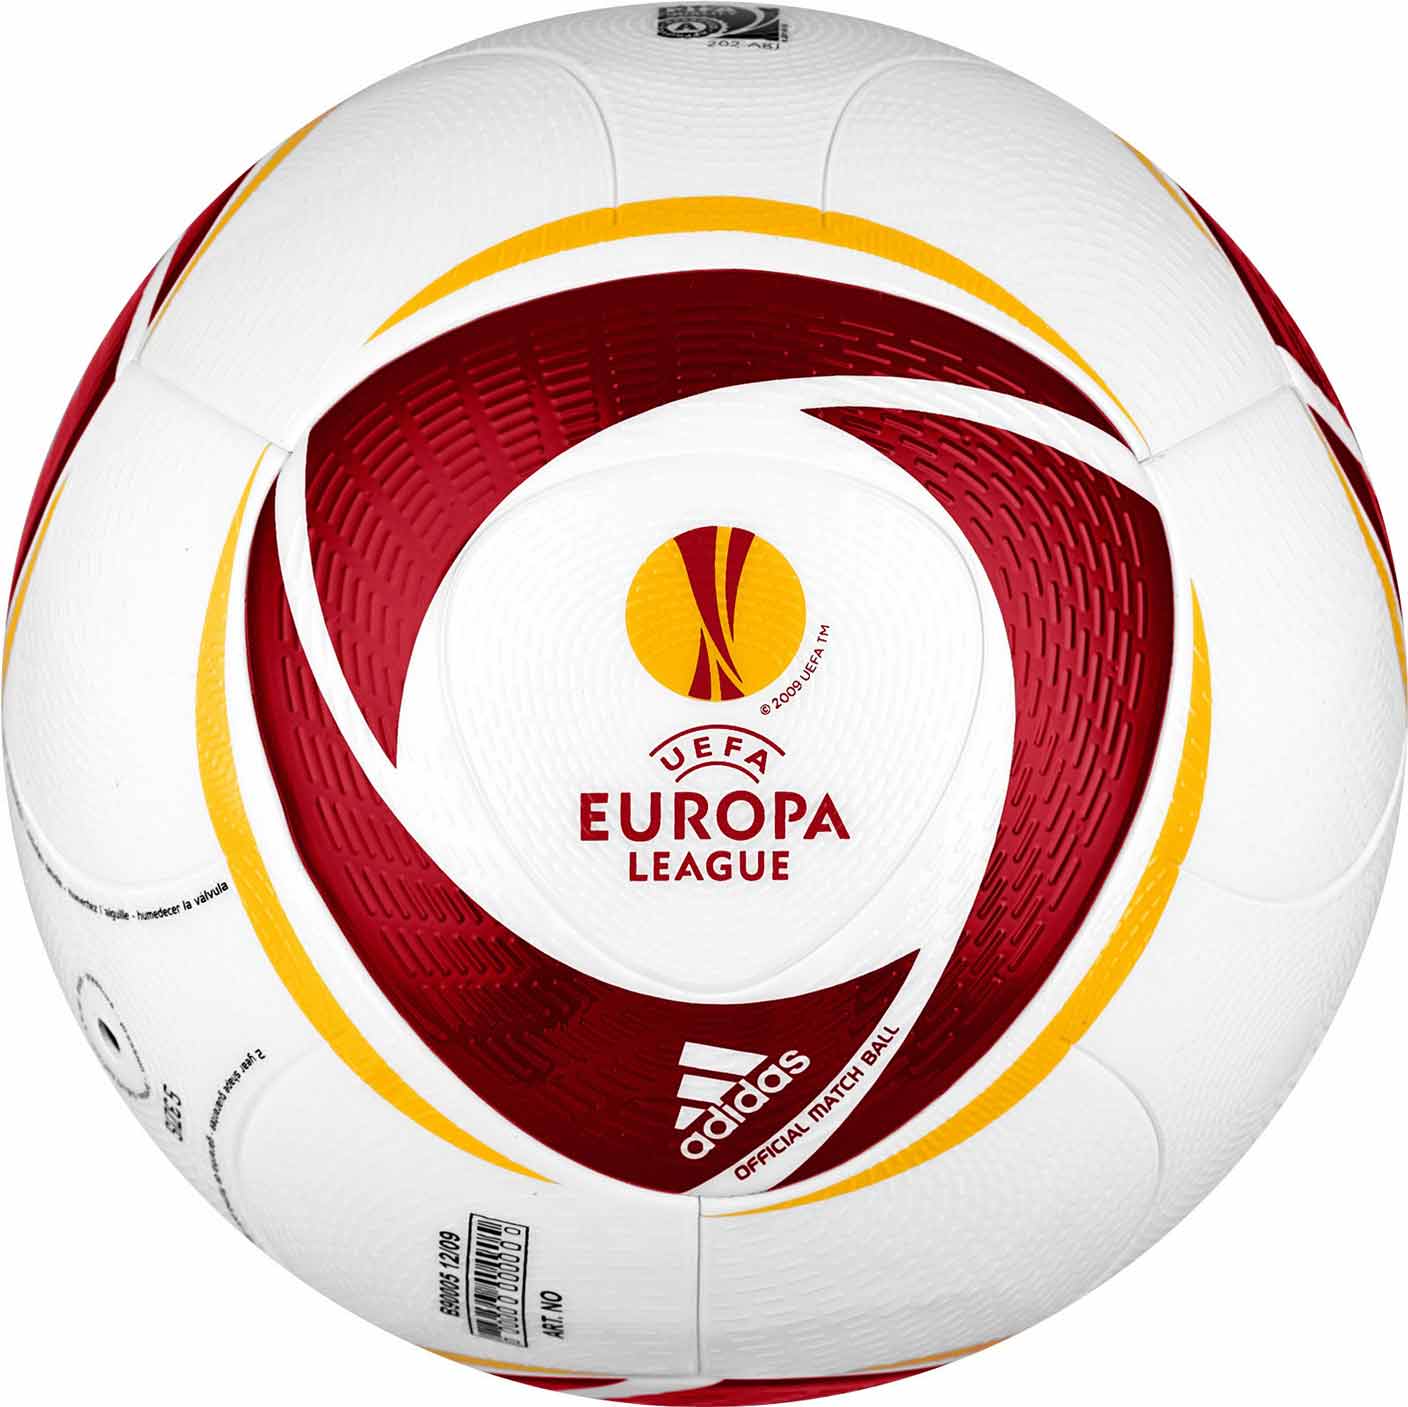 Официальный мяч Лиги Европы сезона 2010-2011